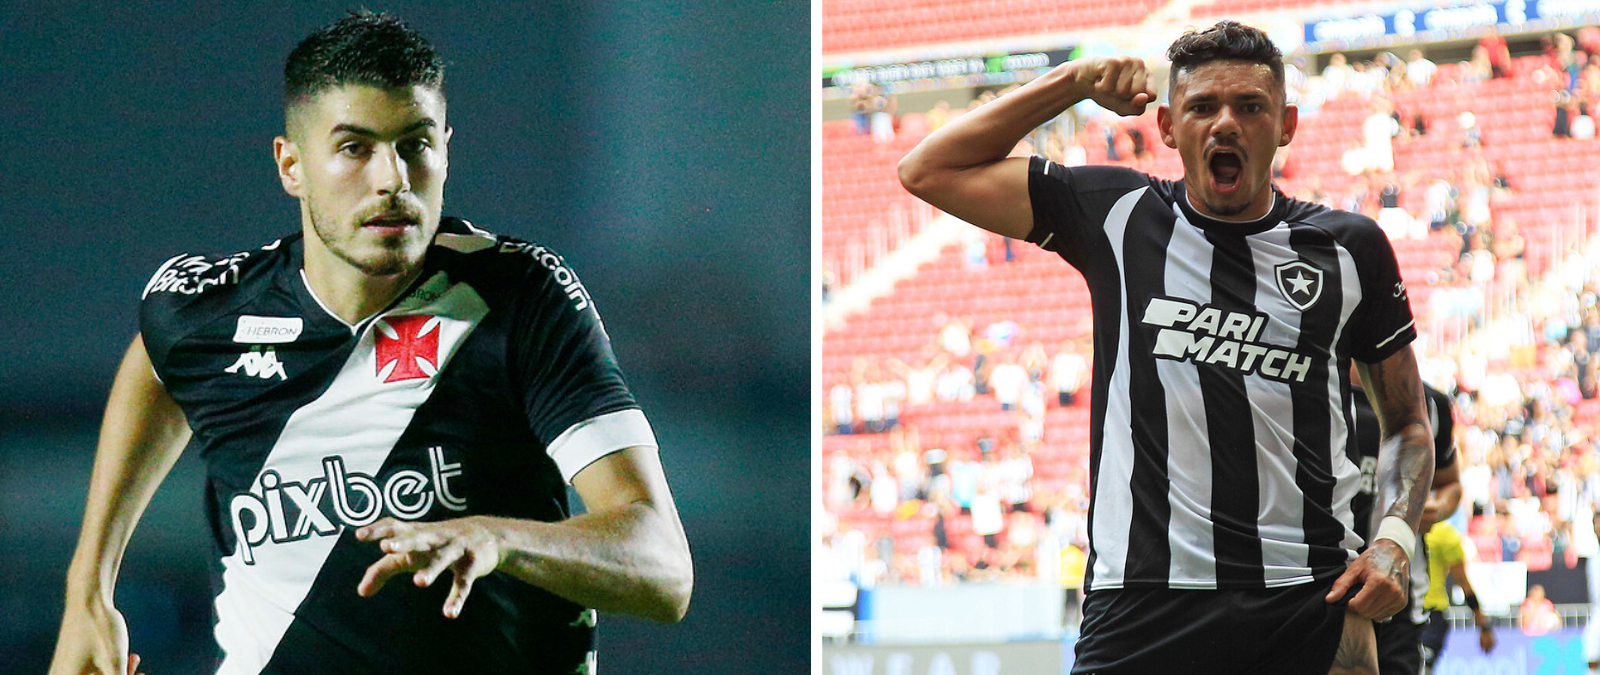 Duelo de SAFS dentro das quatro linhas: Vasco e Botafogo se enfrentam com objetivos diferentes no campeonato